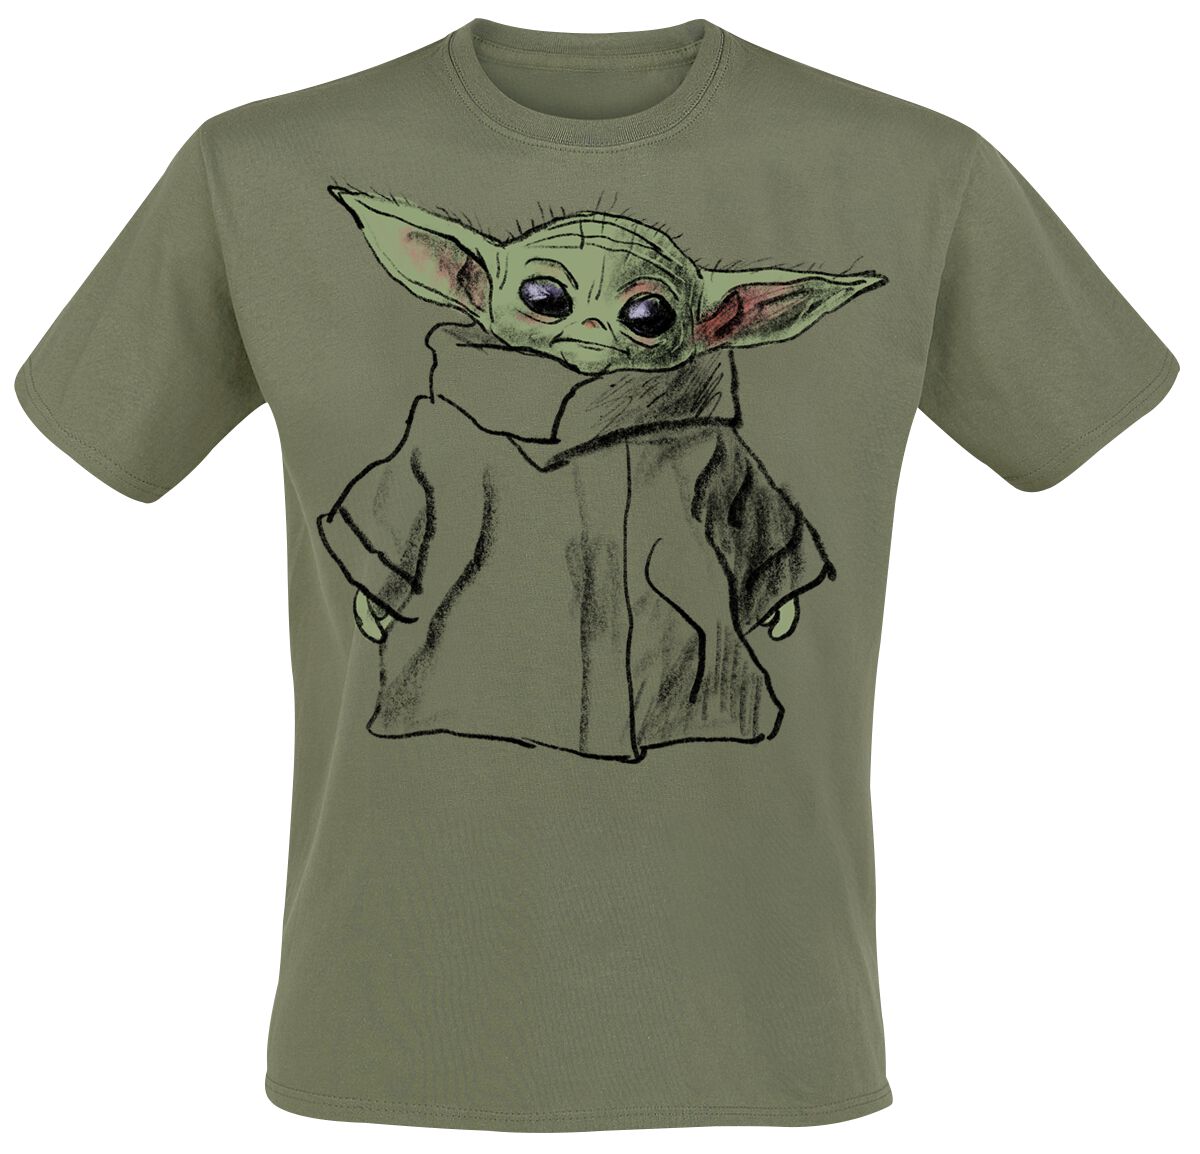 Star Wars T-Shirt - The Mandalorian - Grogu - Sketch - S bis XXL - für Männer - Größe M - grün  - EMP exklusives Merchandise!